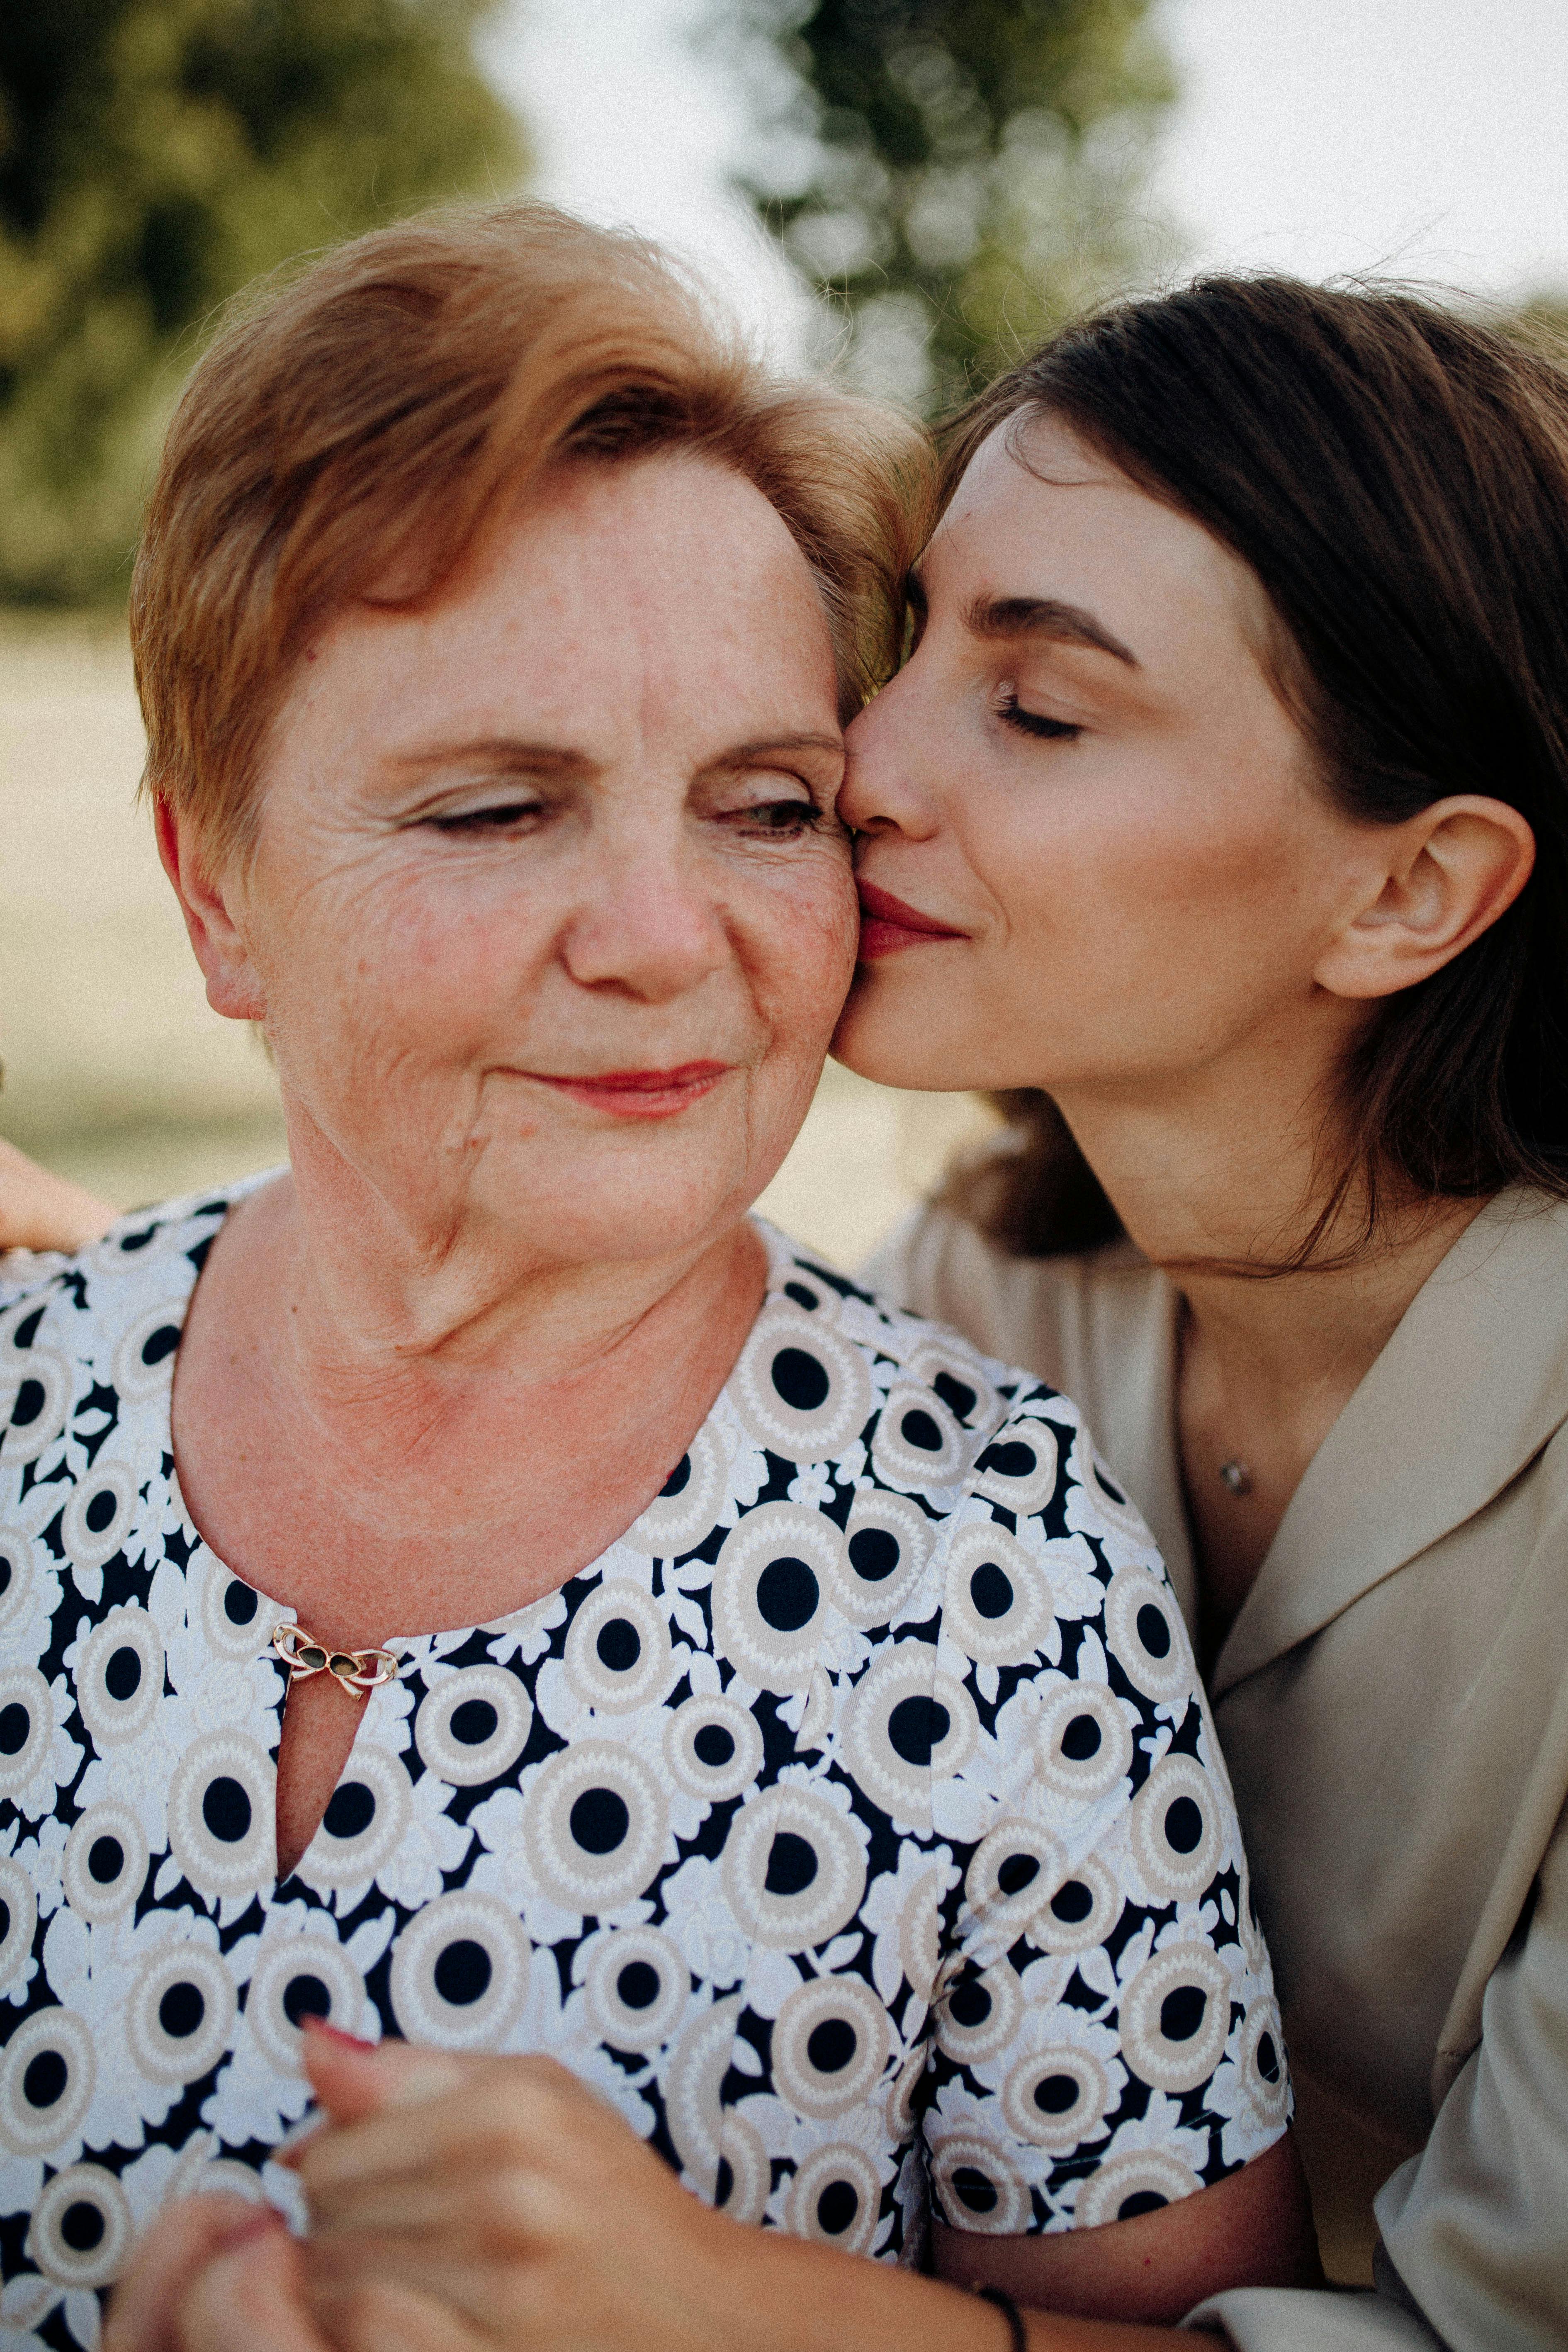 Una joven besa en la mejilla a una mujer mayor | Fuente: Pexels